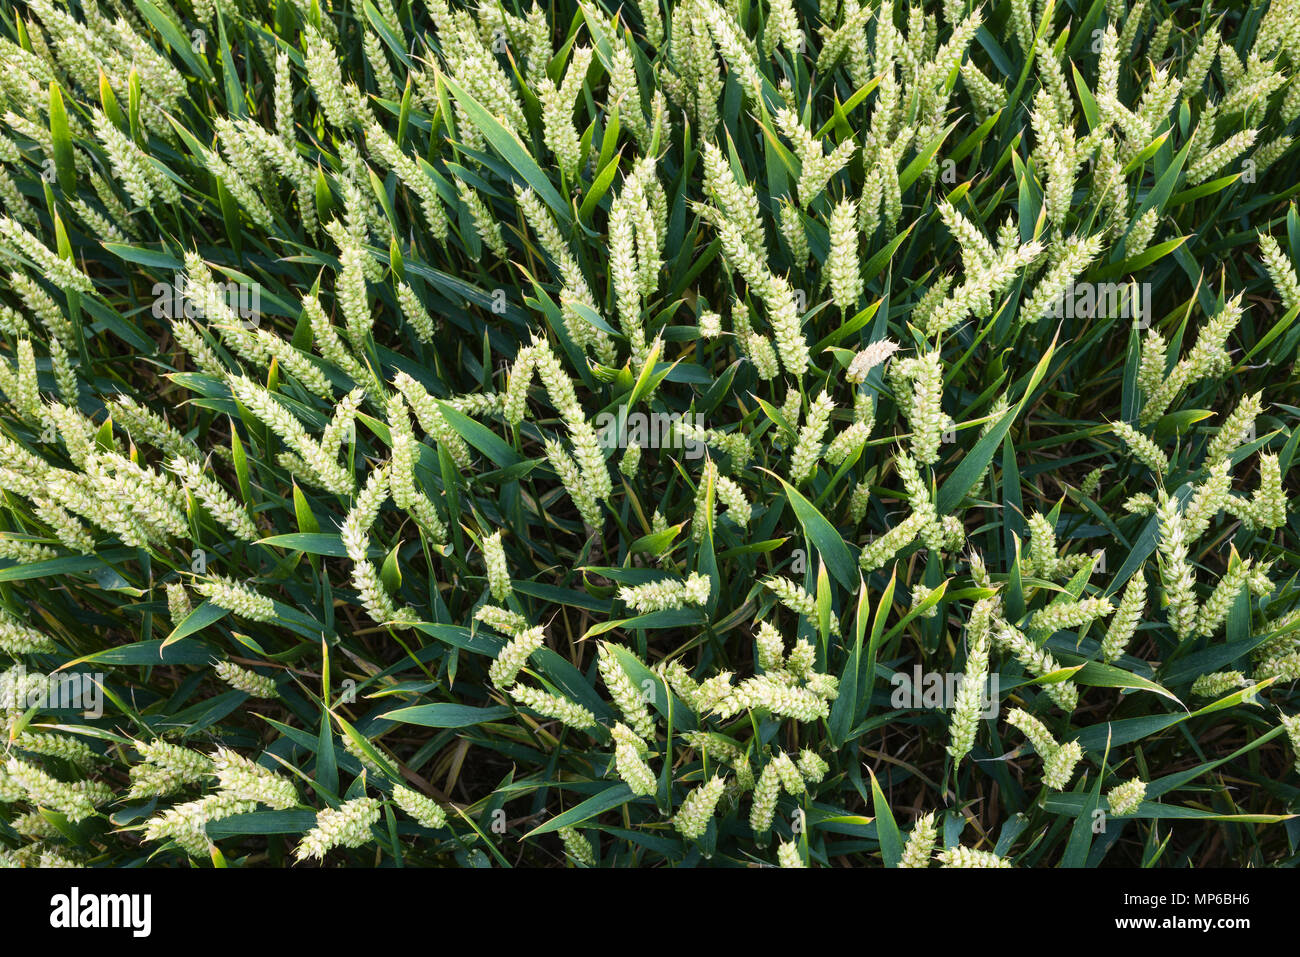 Ears of wheat growing in a field. Stock Photo